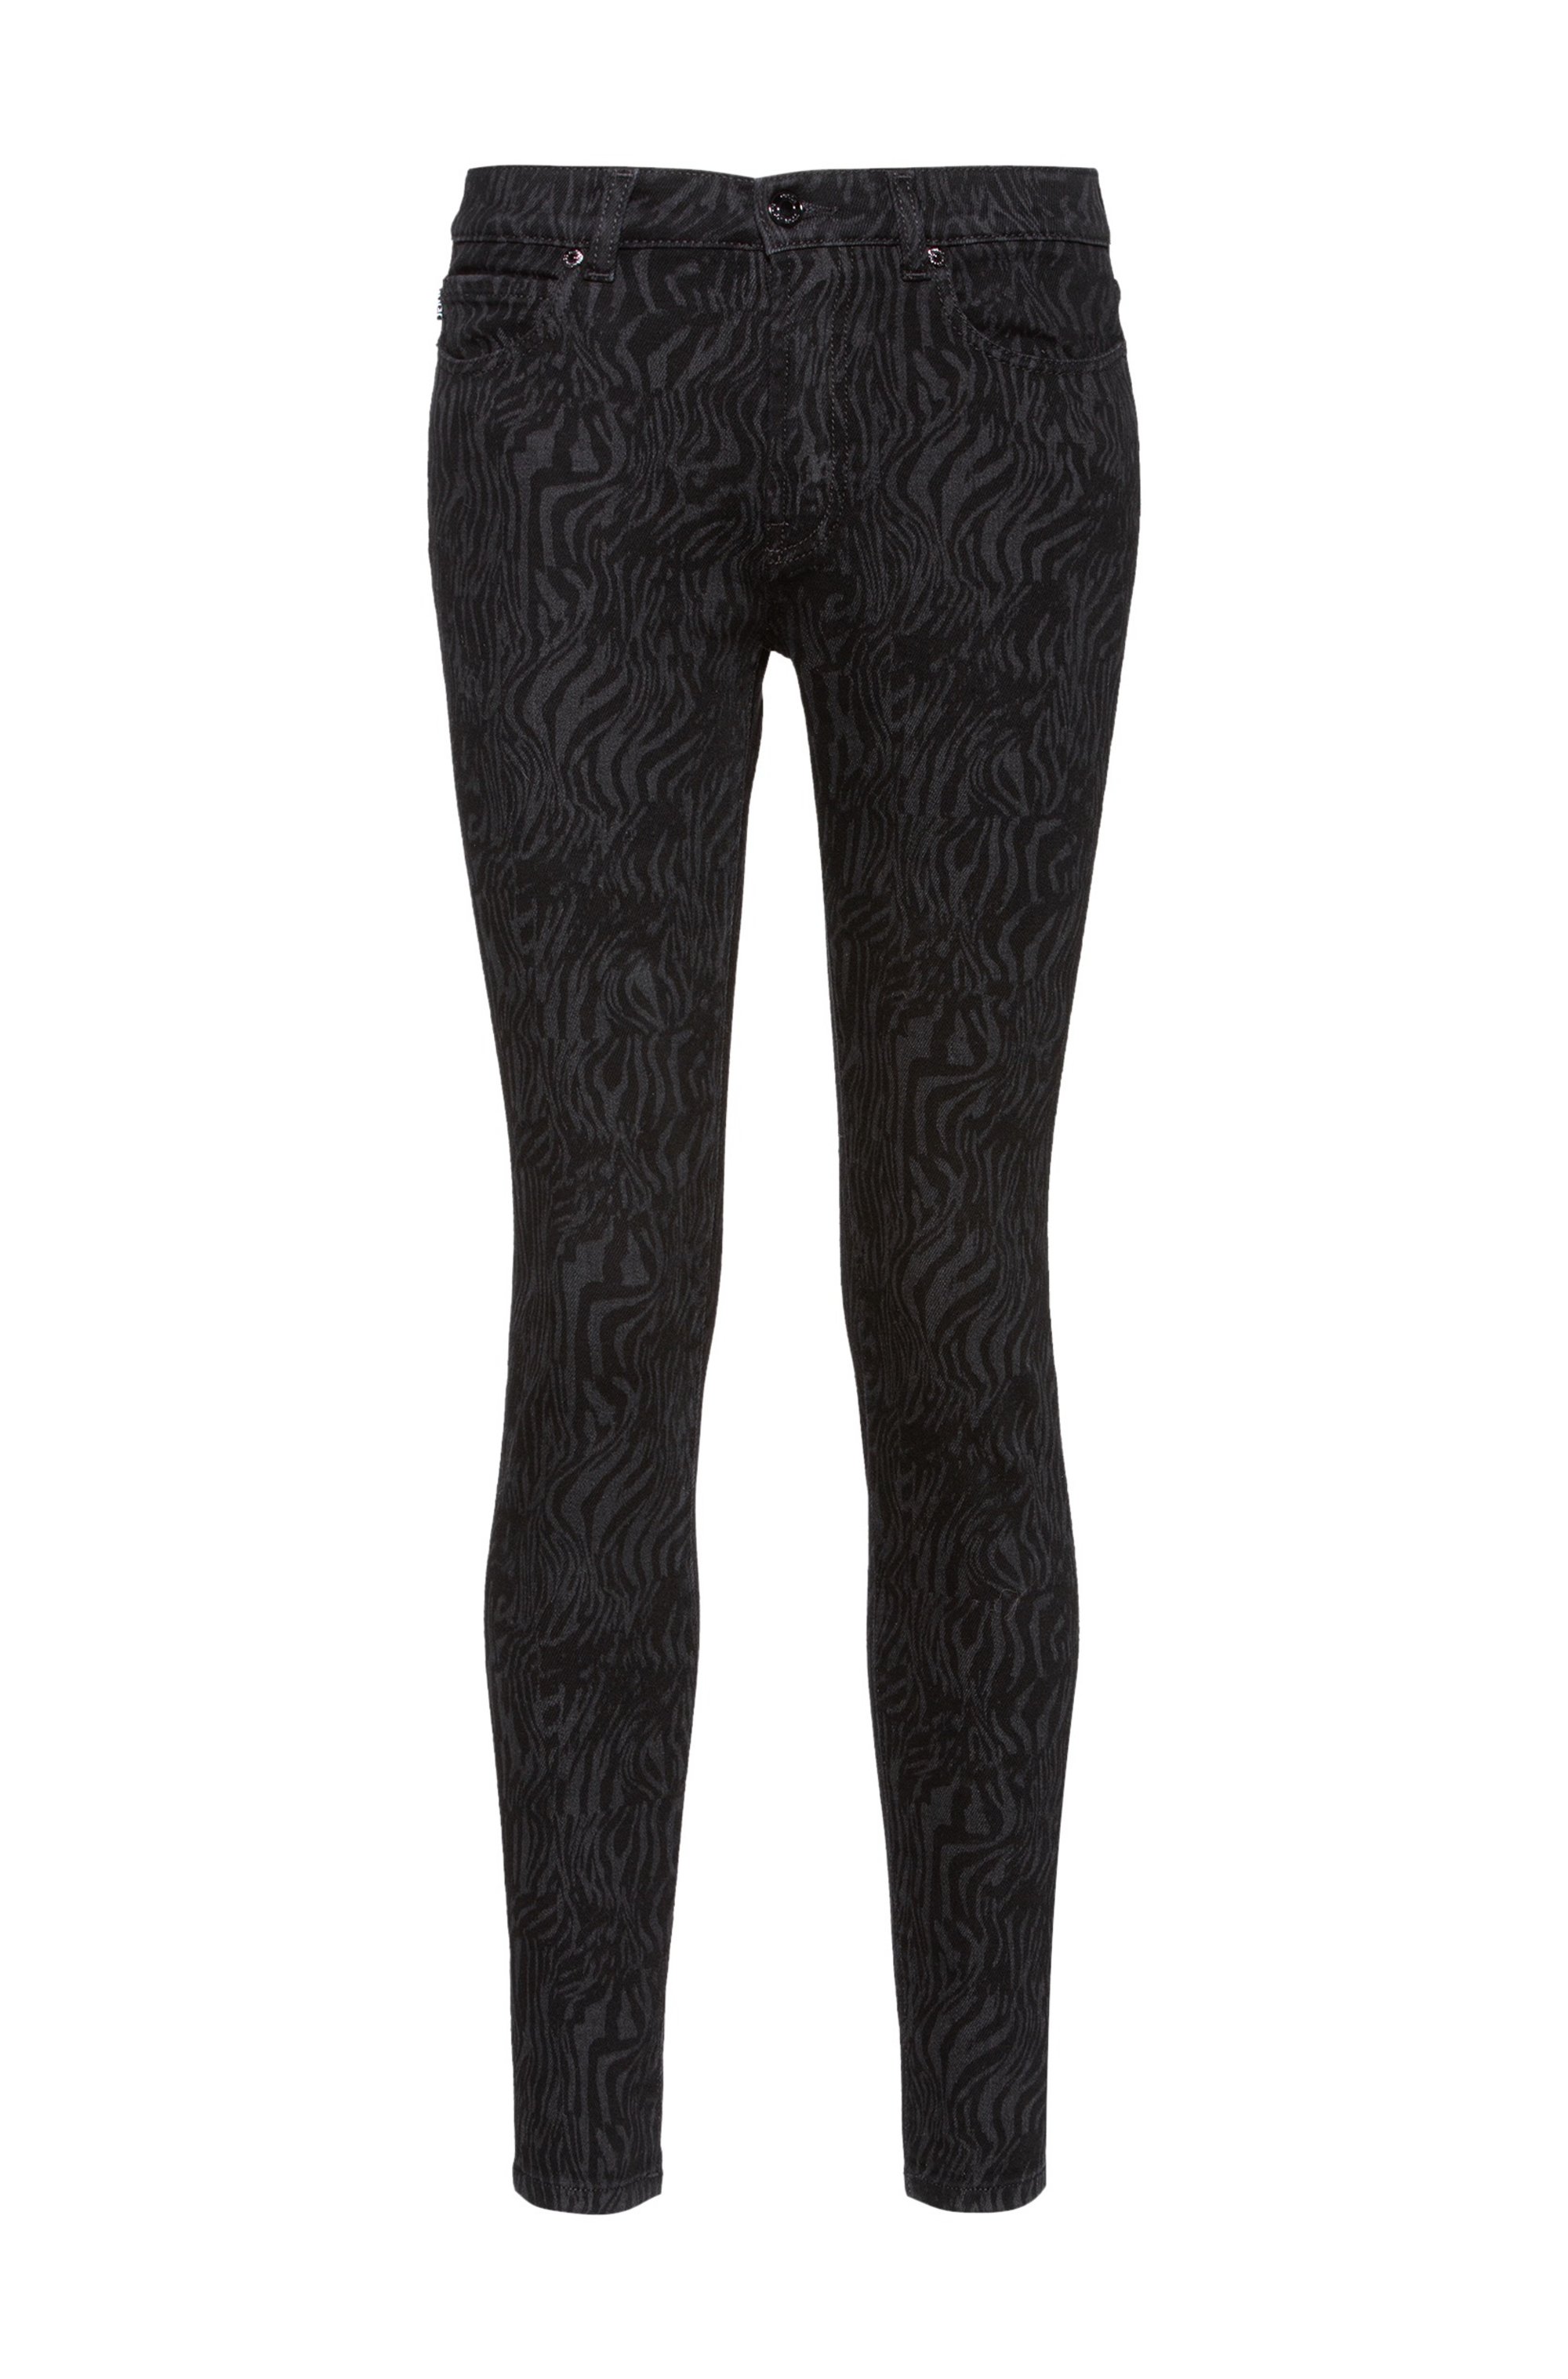 CHARLIE super-skinny-fit jeans in lasered black denim, Black